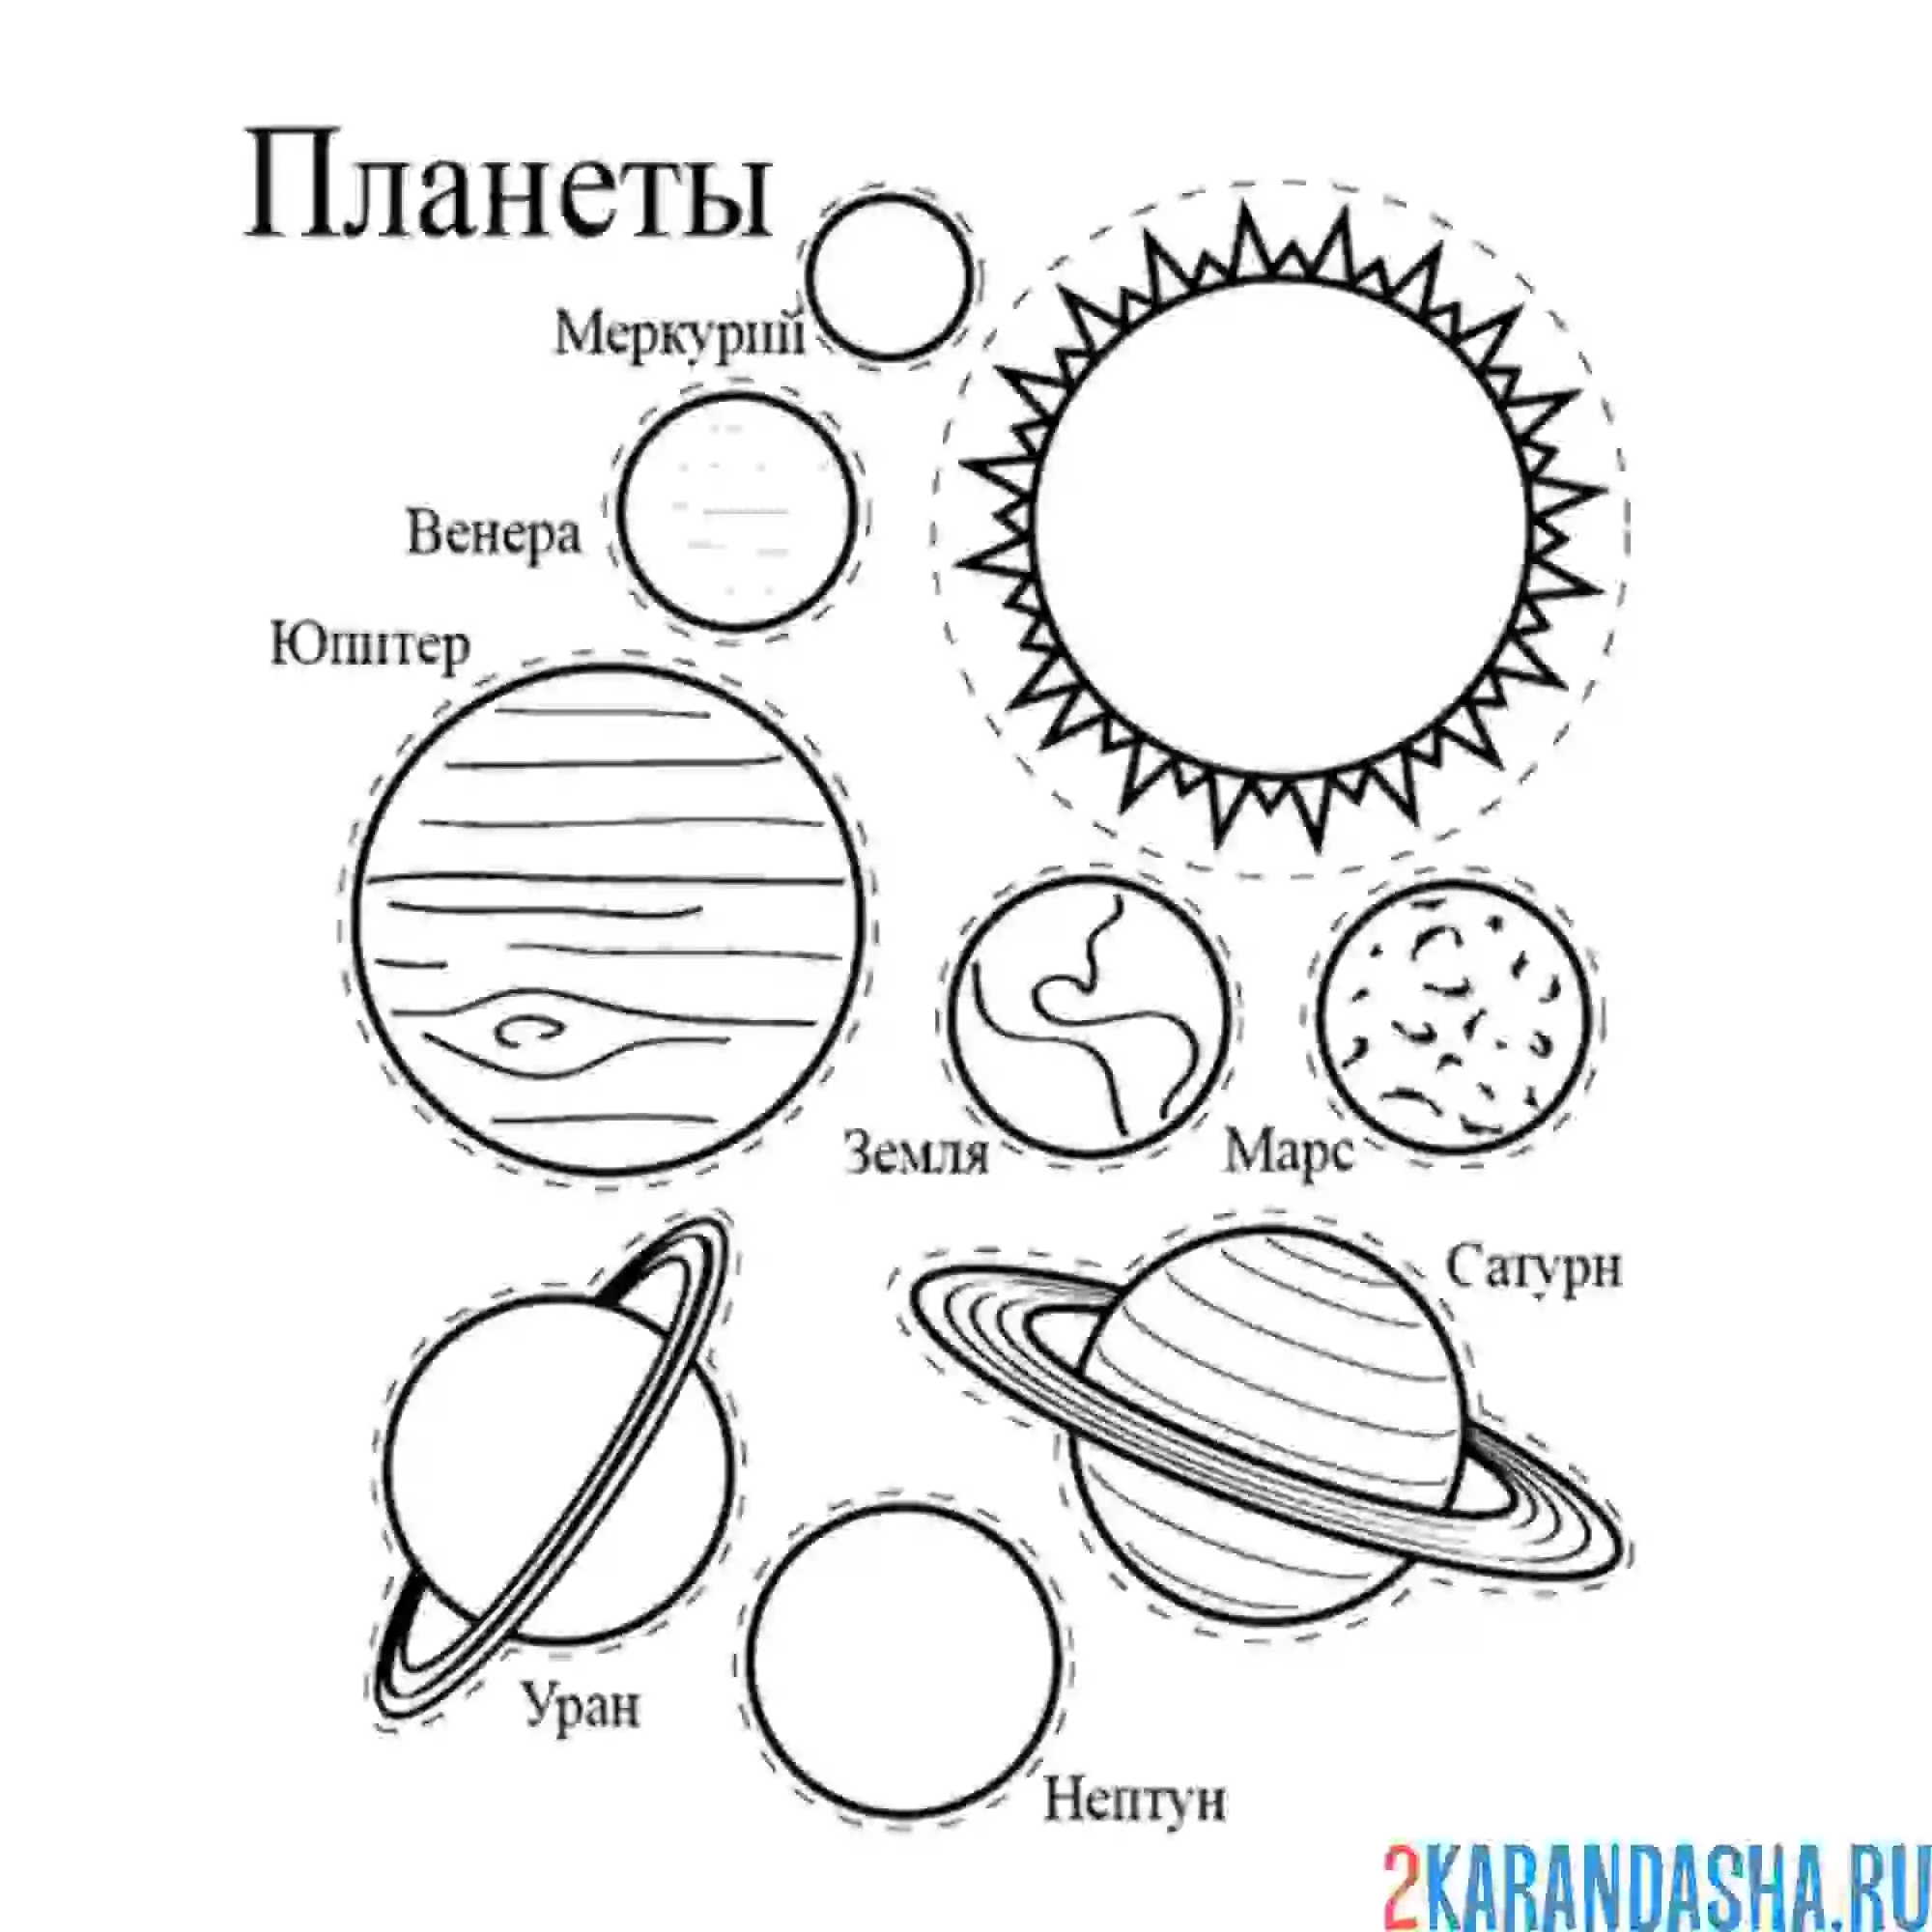 Планеты картинки для детей раскраски. Разукрашка планеты солнечной системы. Раскраска планеты солнечной системы для детей. Раскраски планеты солнечной системы для детей Меркурий. Раскраска планет солнечной системы для детей с названиями.